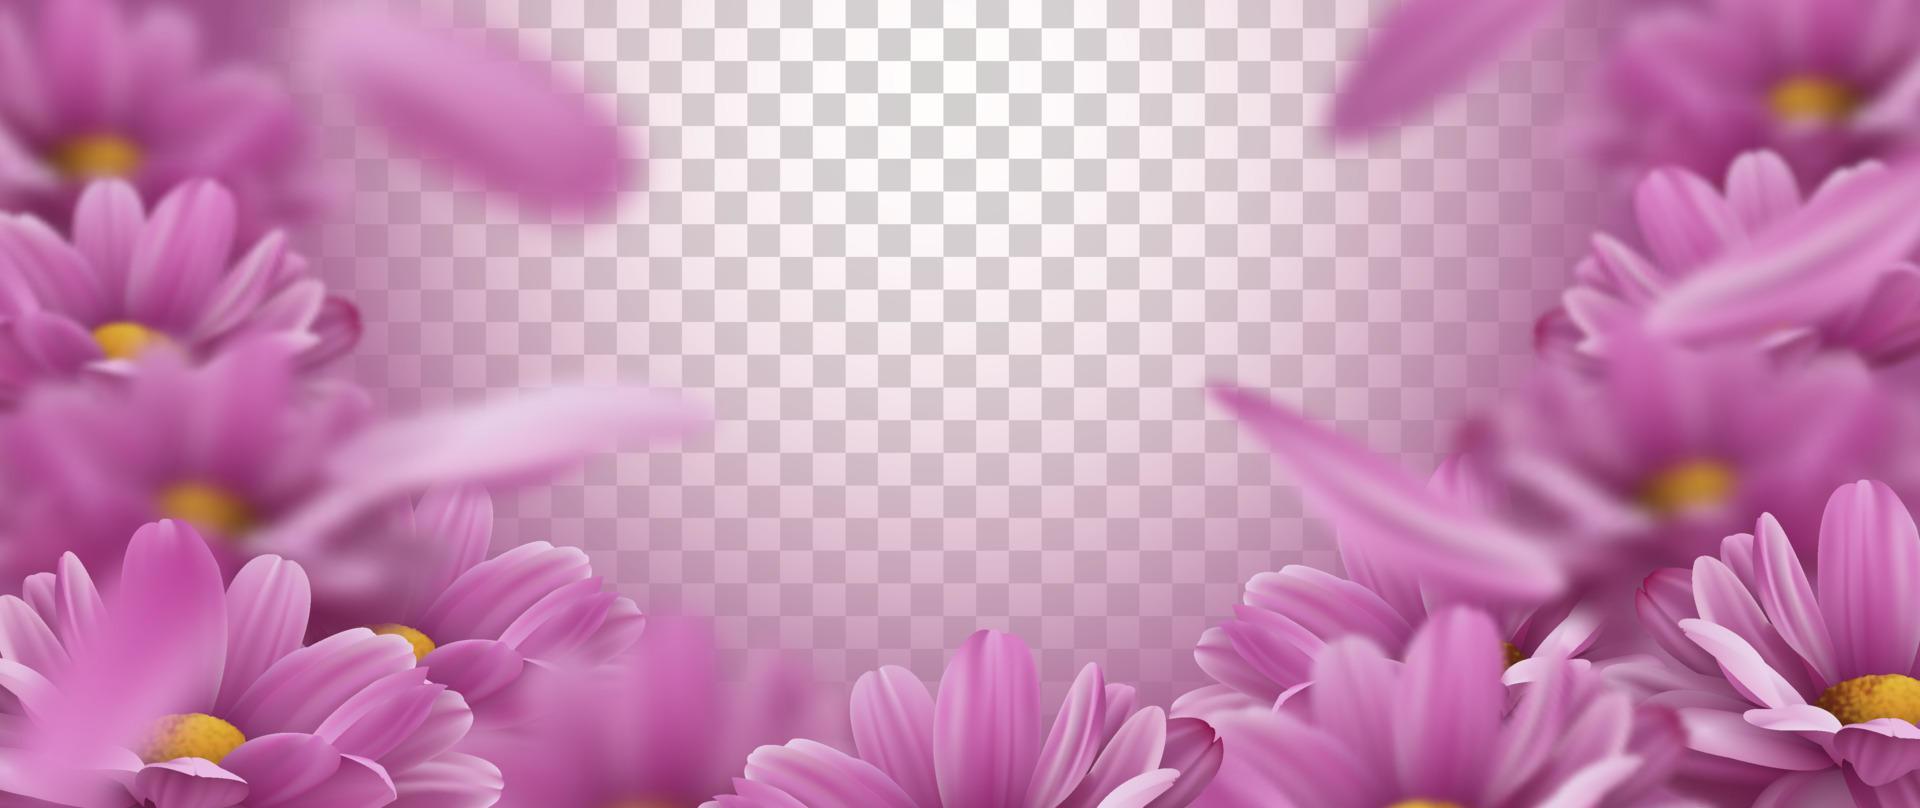 Sfondo 3d con fiori di crisantemo rosa realistici e petali che cadono. illustrazione vettoriale